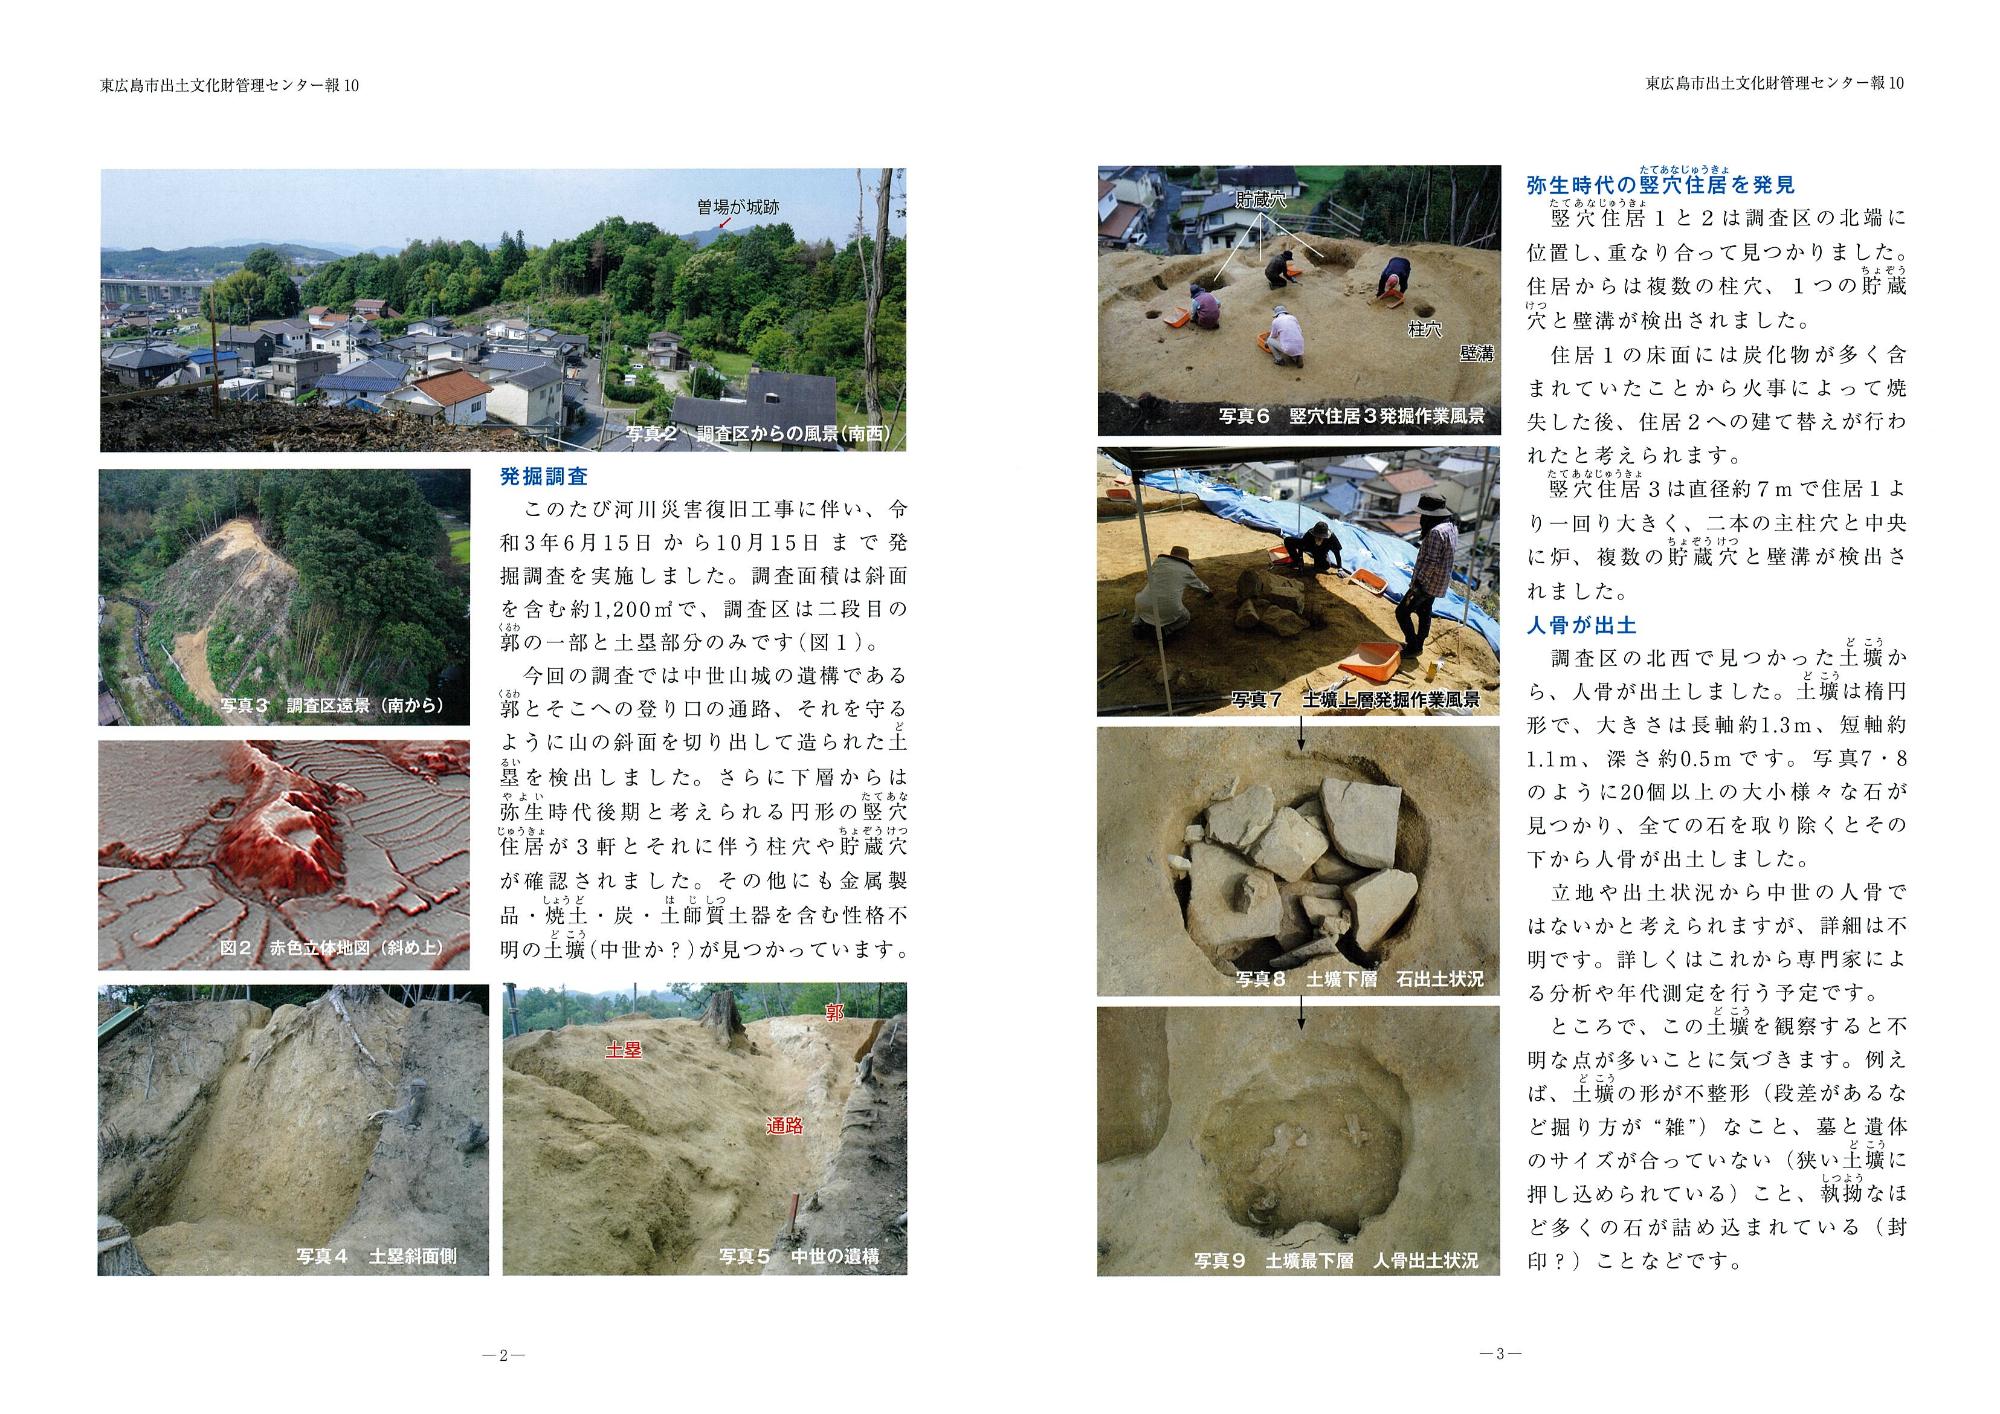 東広島市出土文化財管理センター報『東ひろしまの遺跡』10の写真2